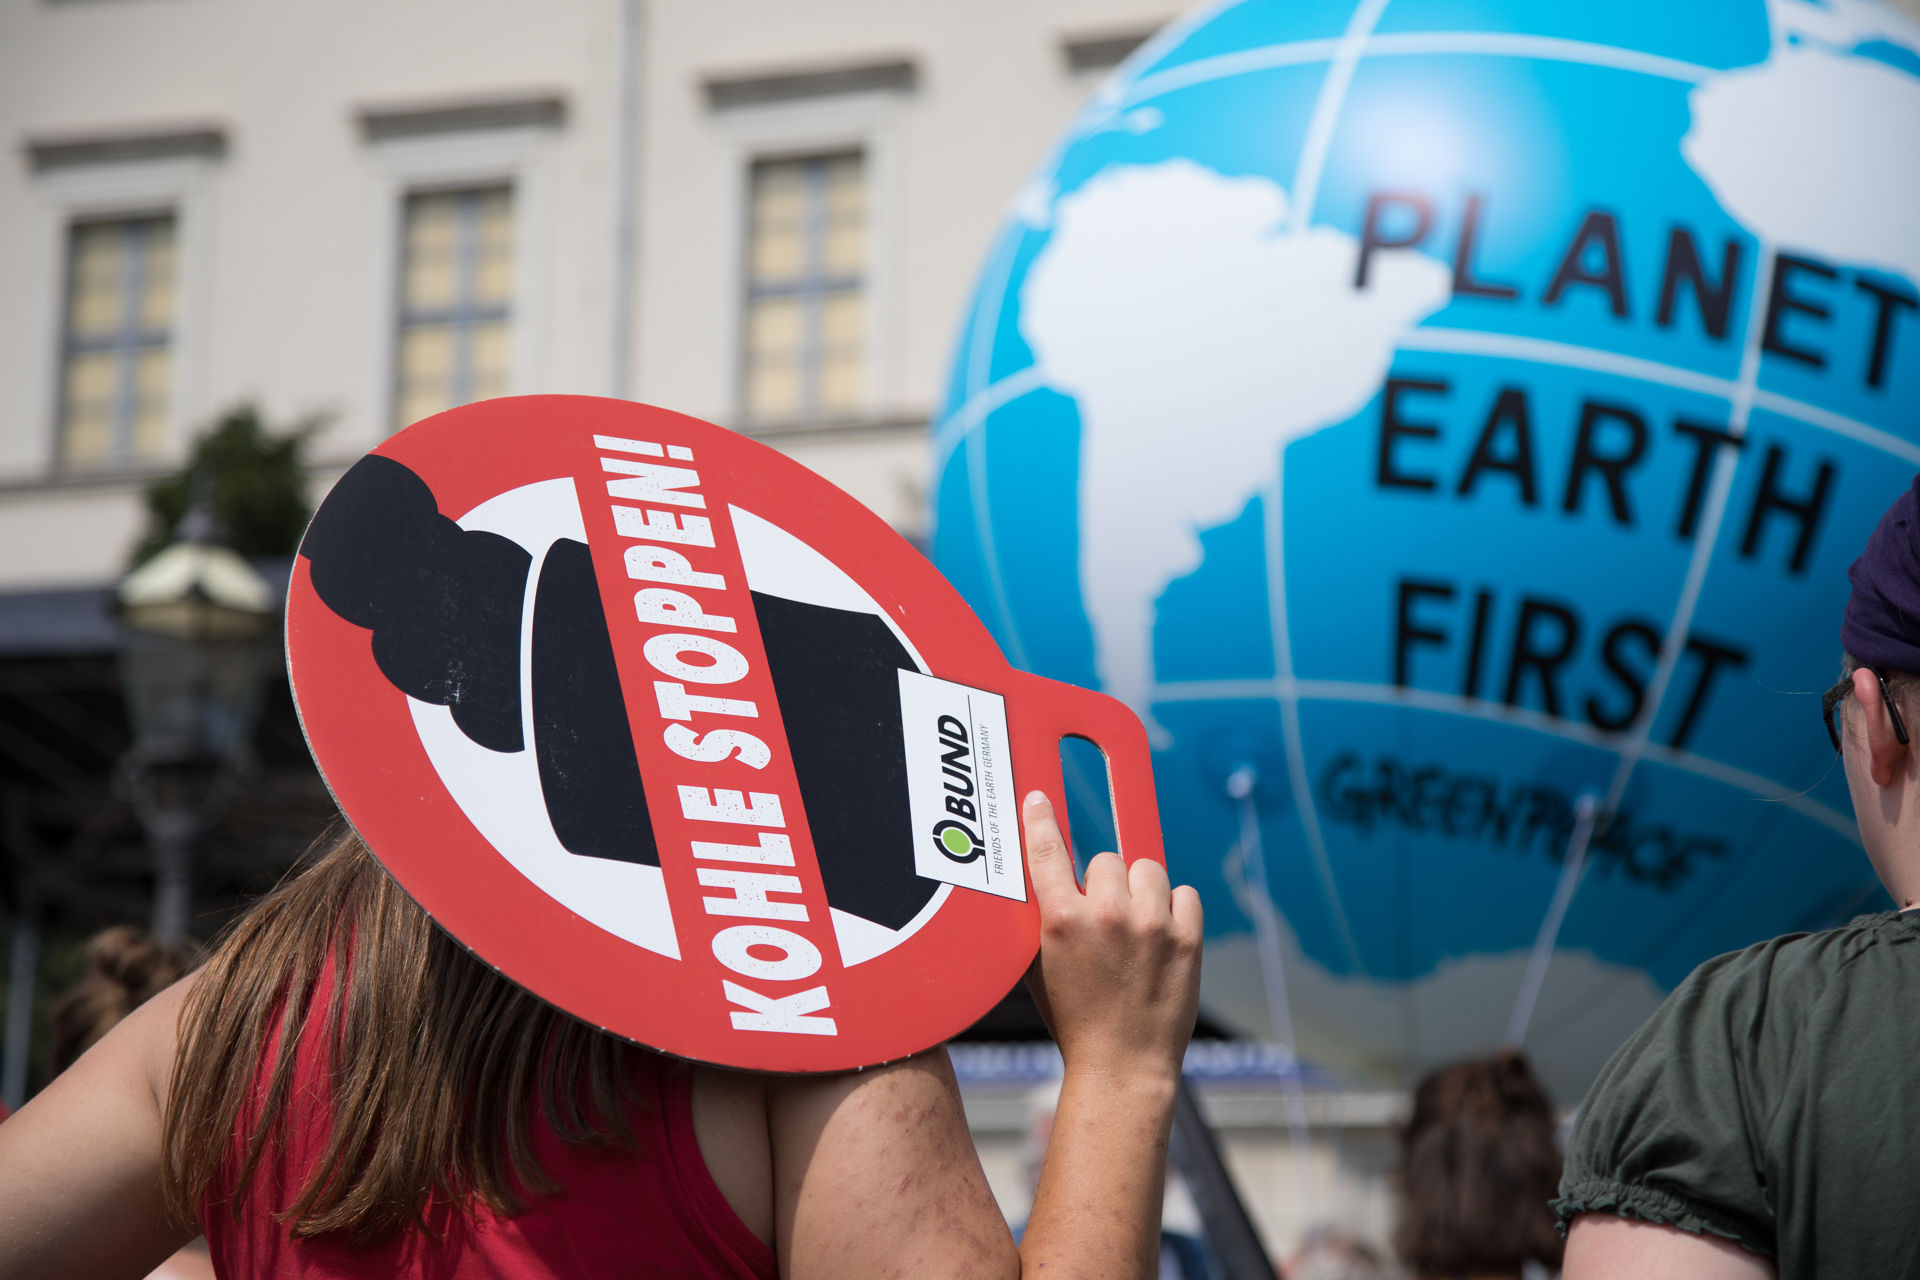 Frau von hinten, hält Schild auf dem steht: "Kohle stoppen"; im Hintergrund aufgeblasener Erdball auf dem steht: "Planet Earth First, Greenpeace"